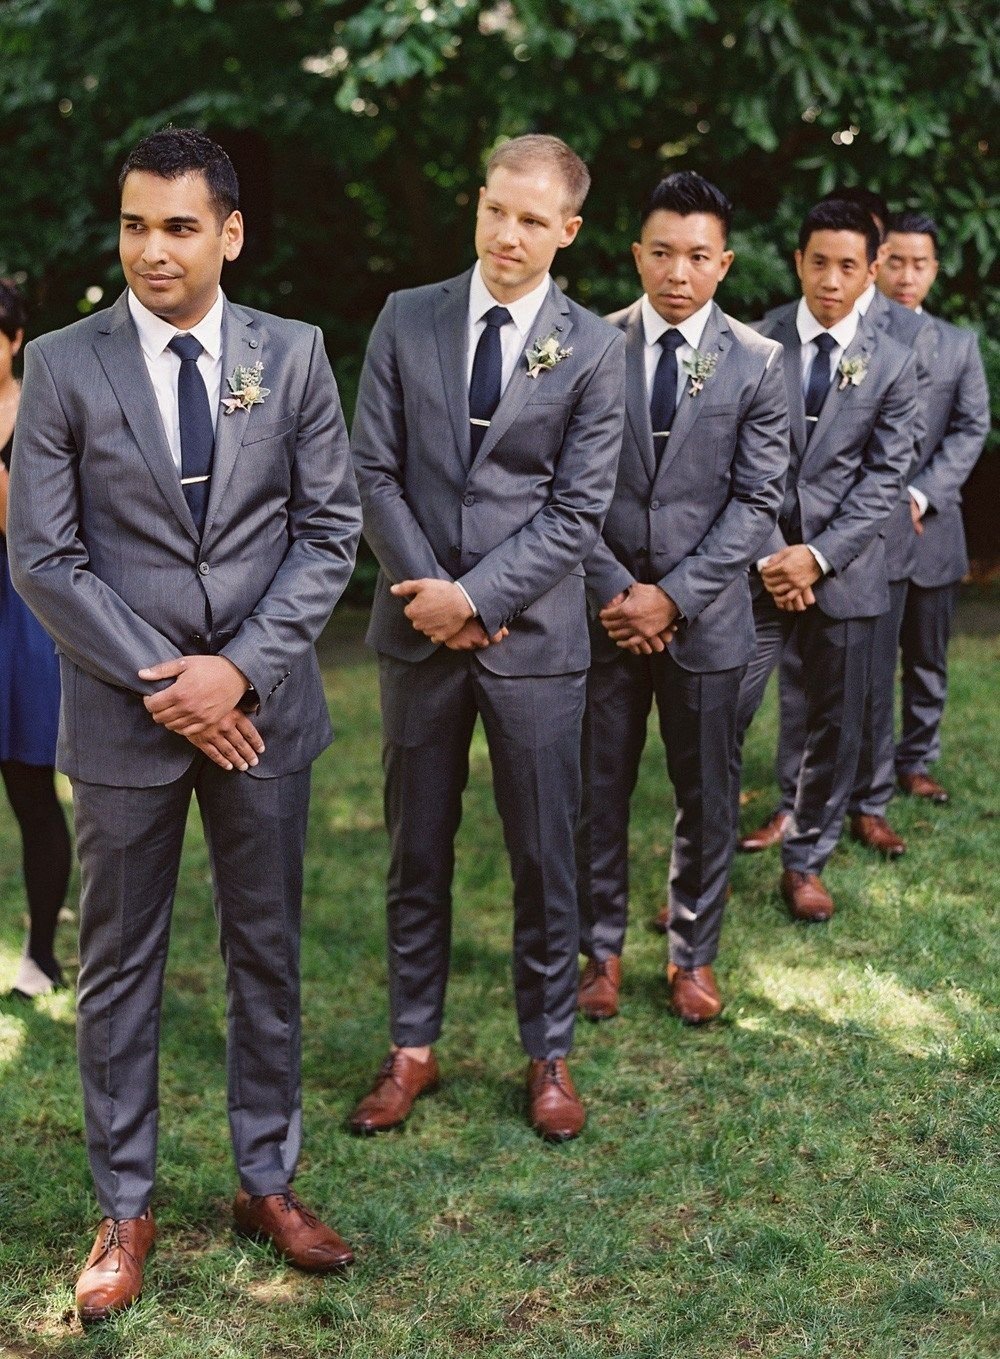 10 Fashionable Groom And Groomsmen Attire Ideas groomsmen attire ideas 131 wedding wedding and wedding groom 2022